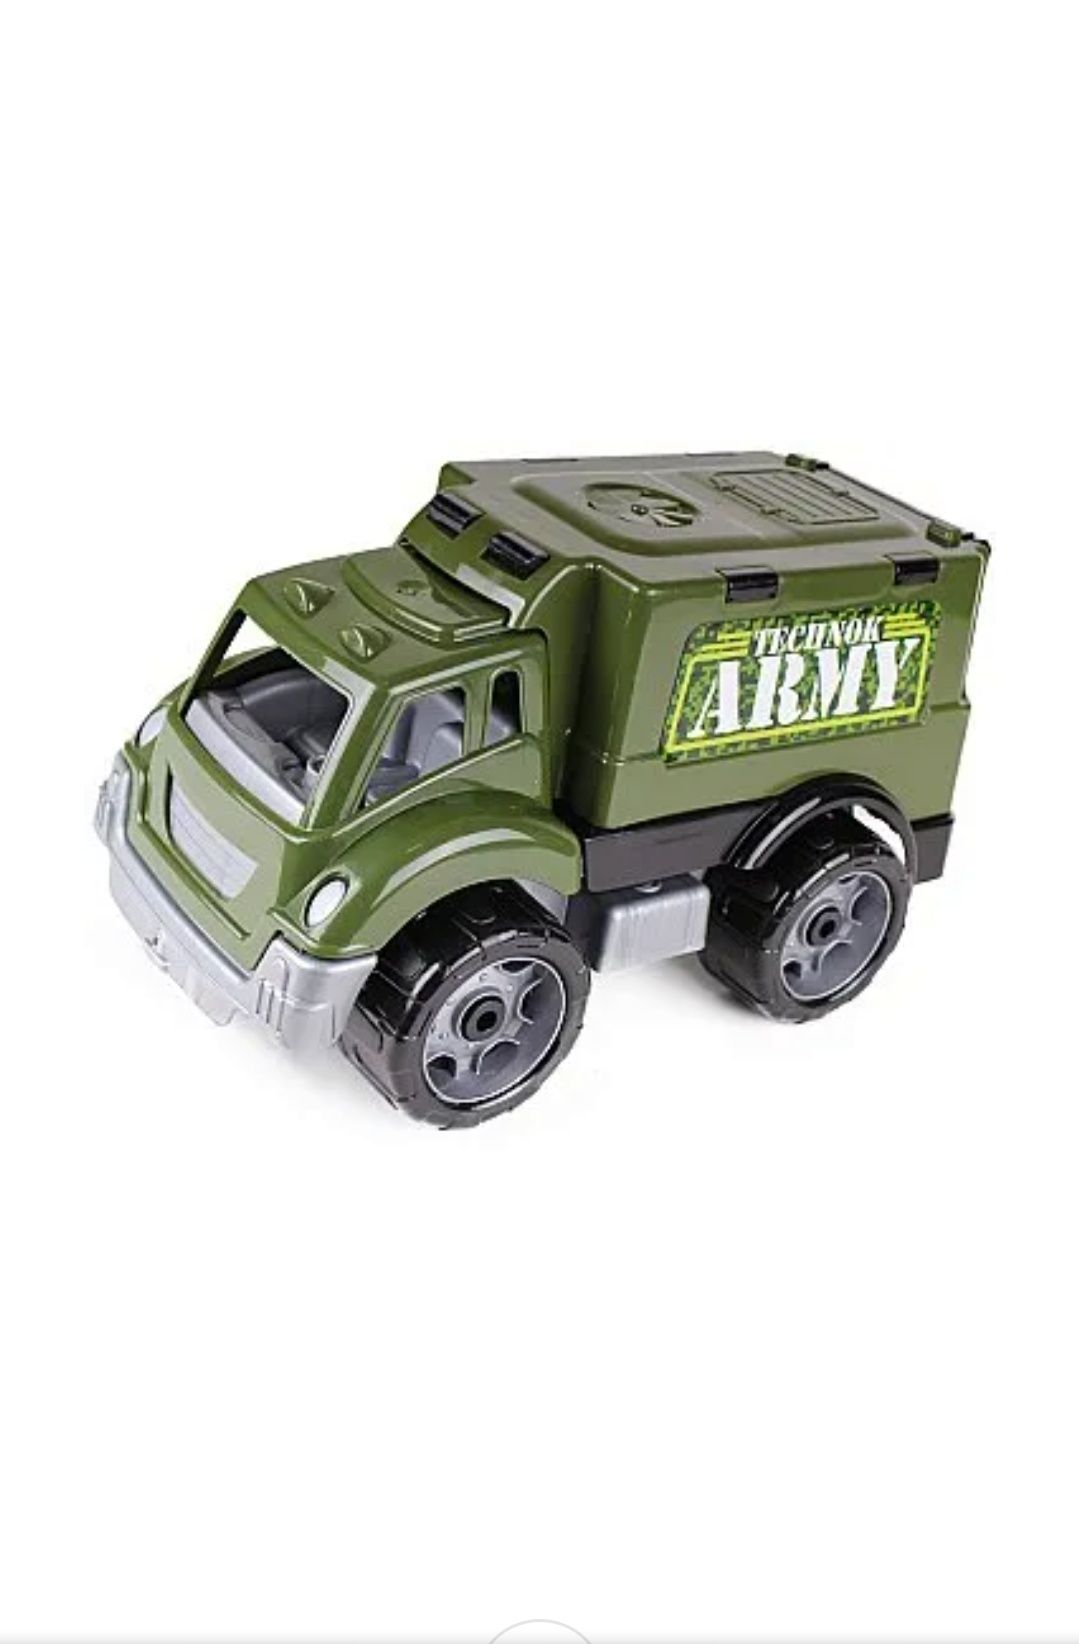 Военная машина армейская Technok грузовик внедорожник